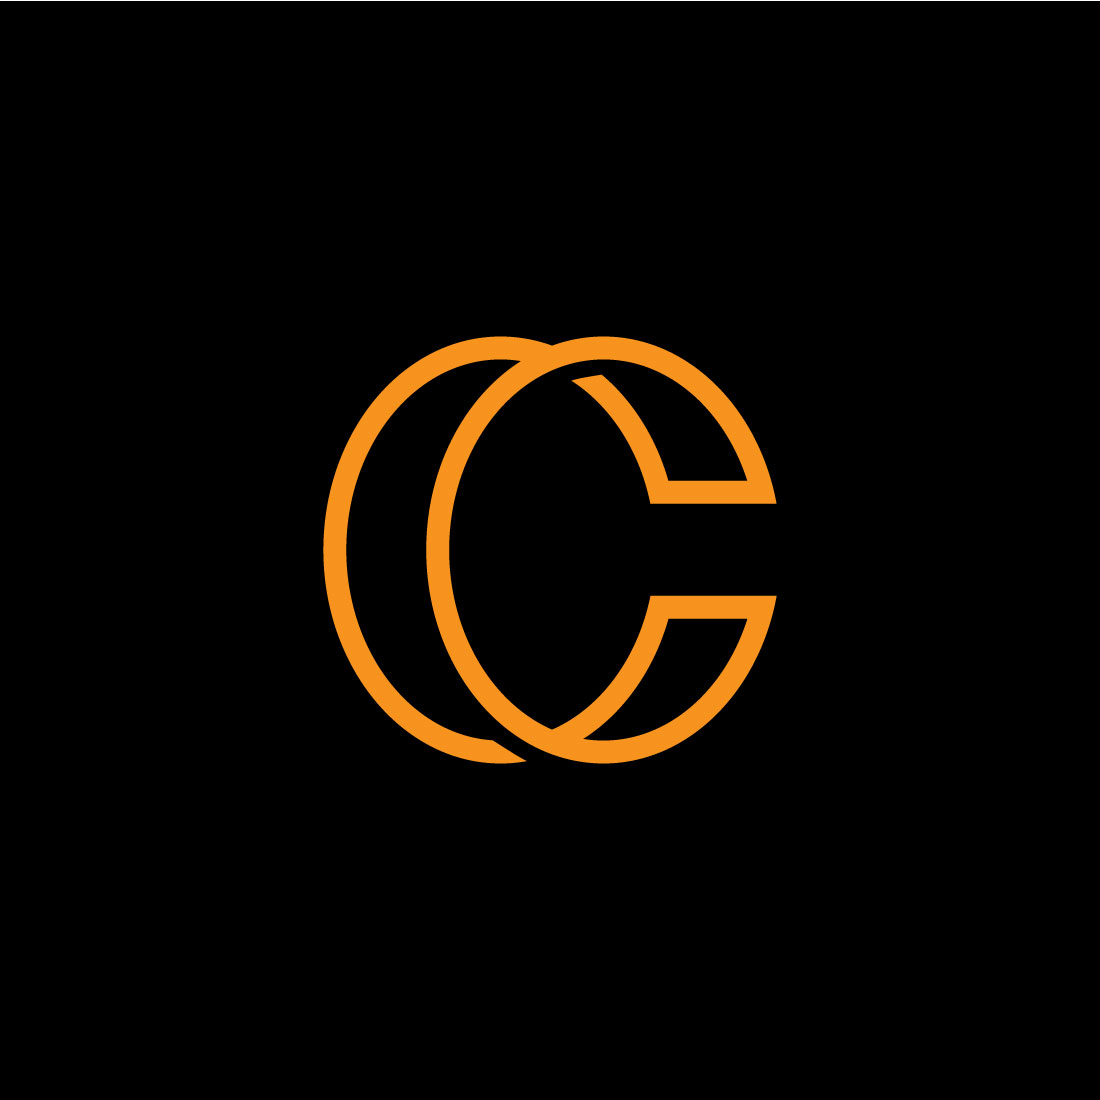 Simple C Logo Design cover image.